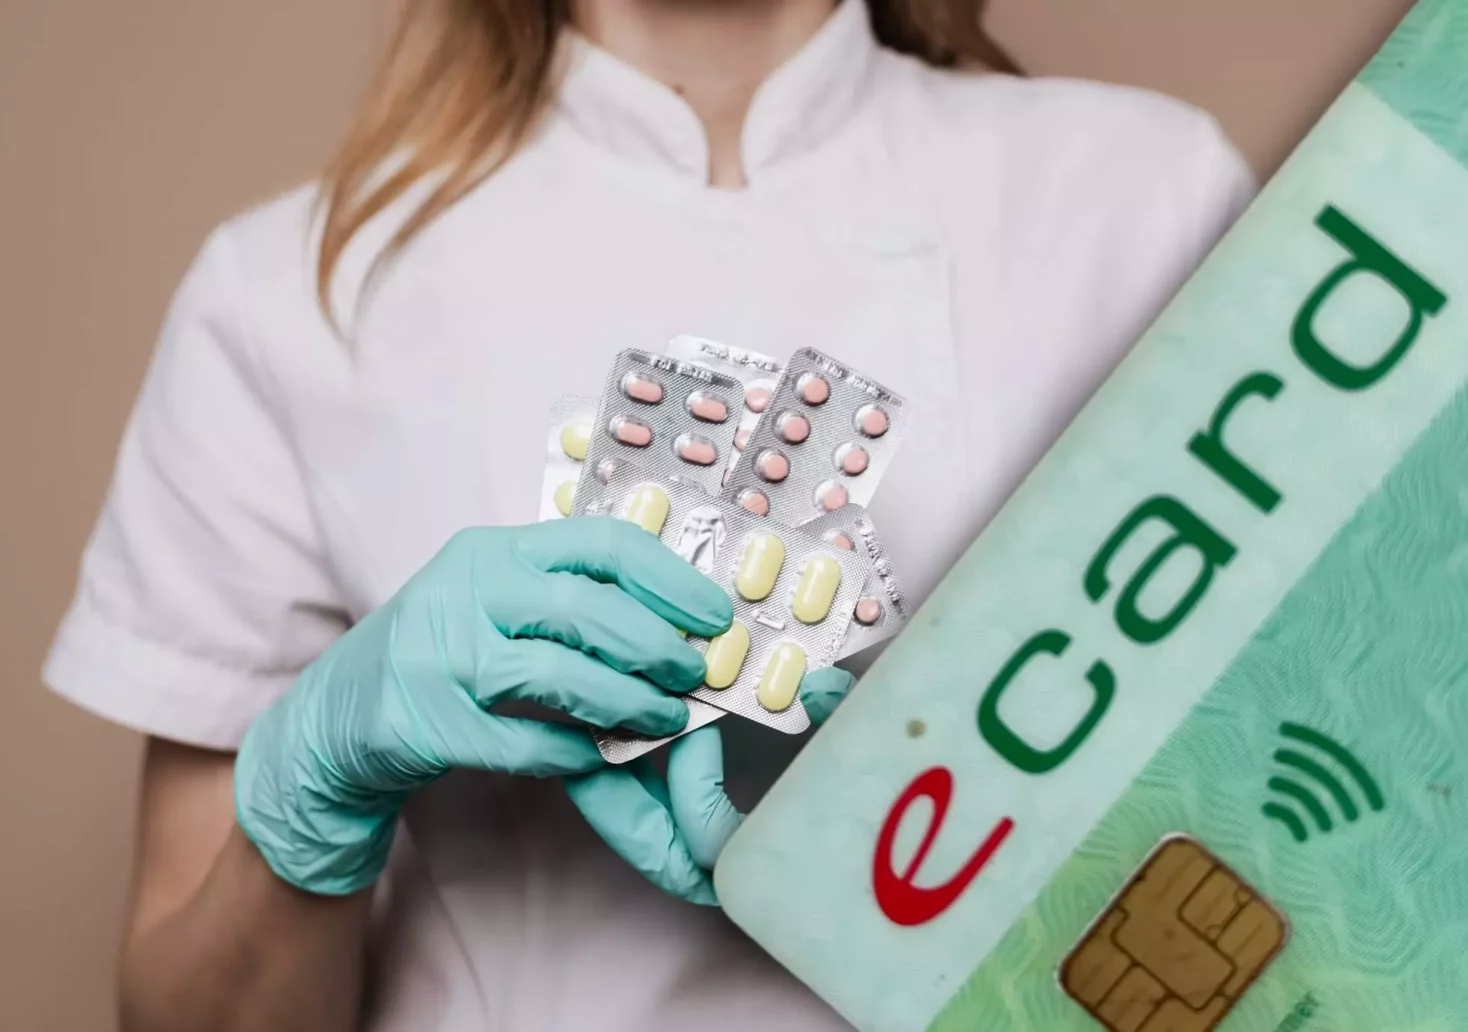 Bild auf 5min.at zeigt eine Frau mit Medikamenten in der Hand und im Vordergrund die E-Card.